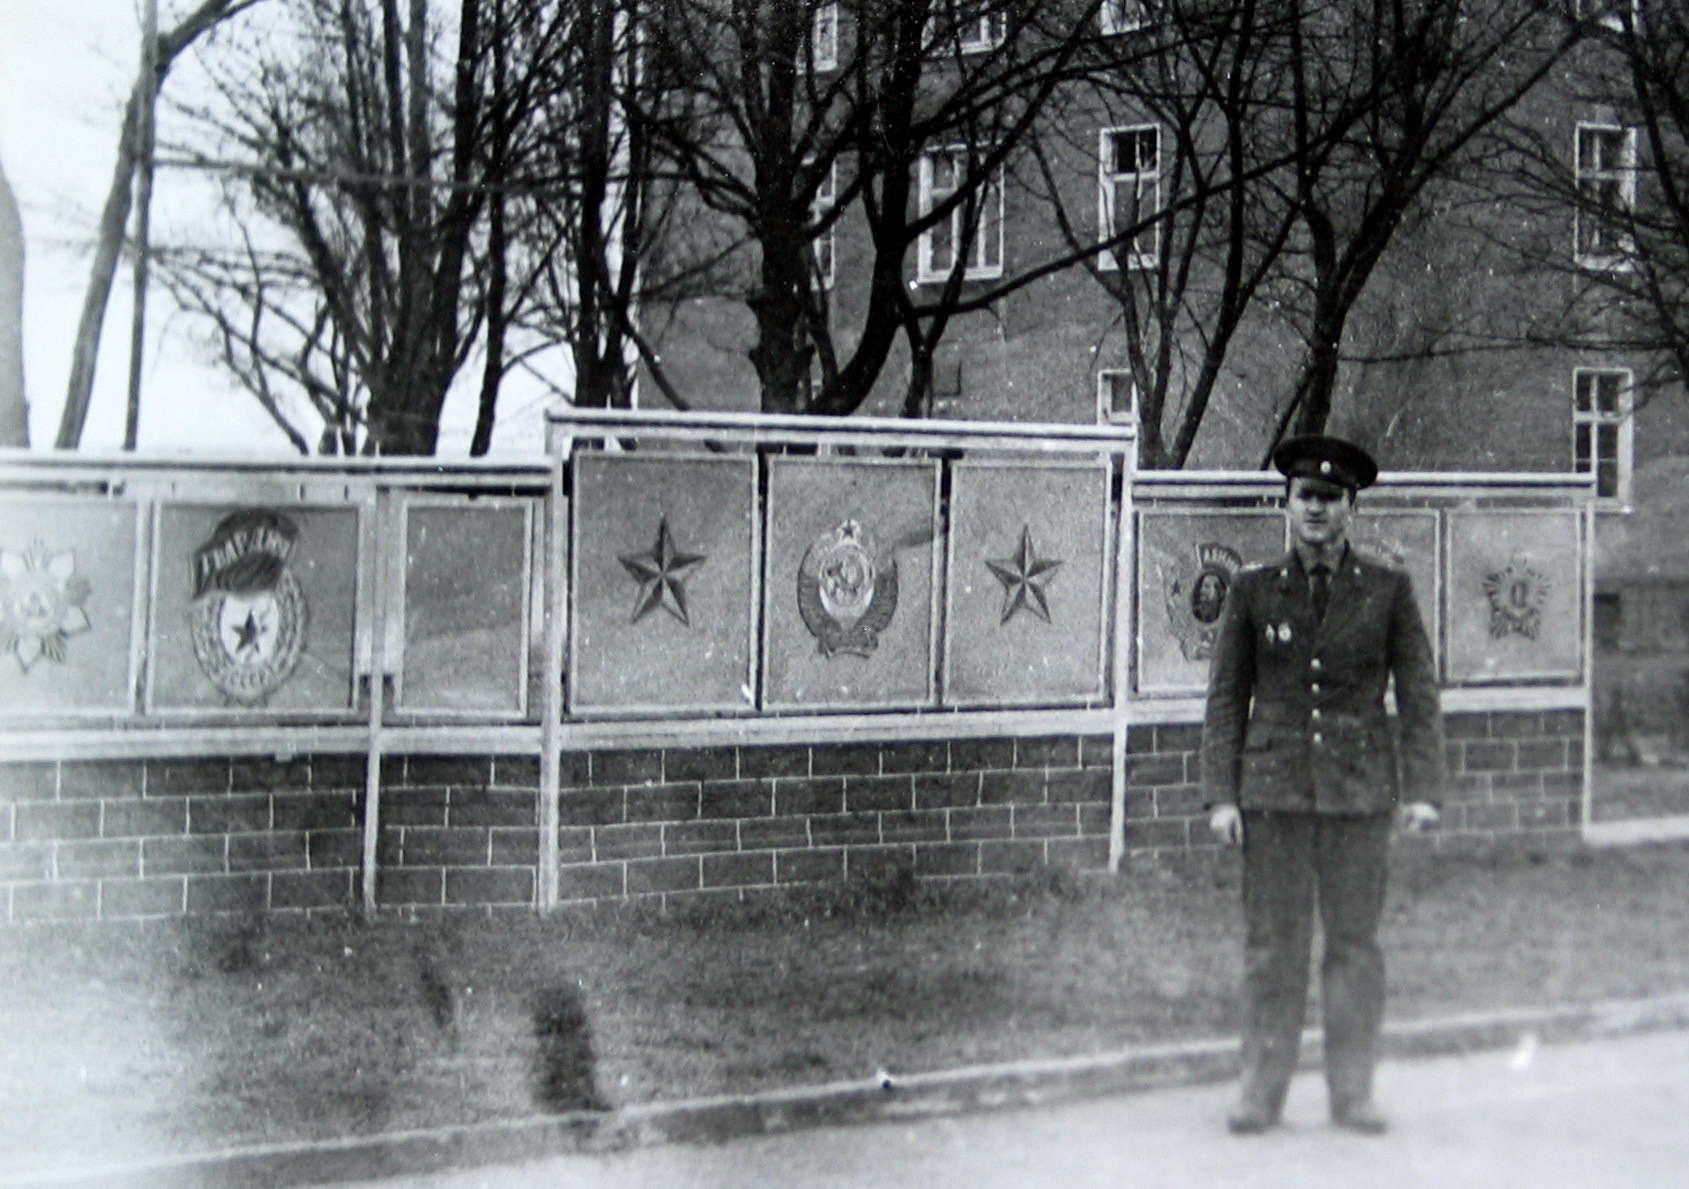 335 гвардейский танковый полк дислоцировался в городе пренцлау гдр